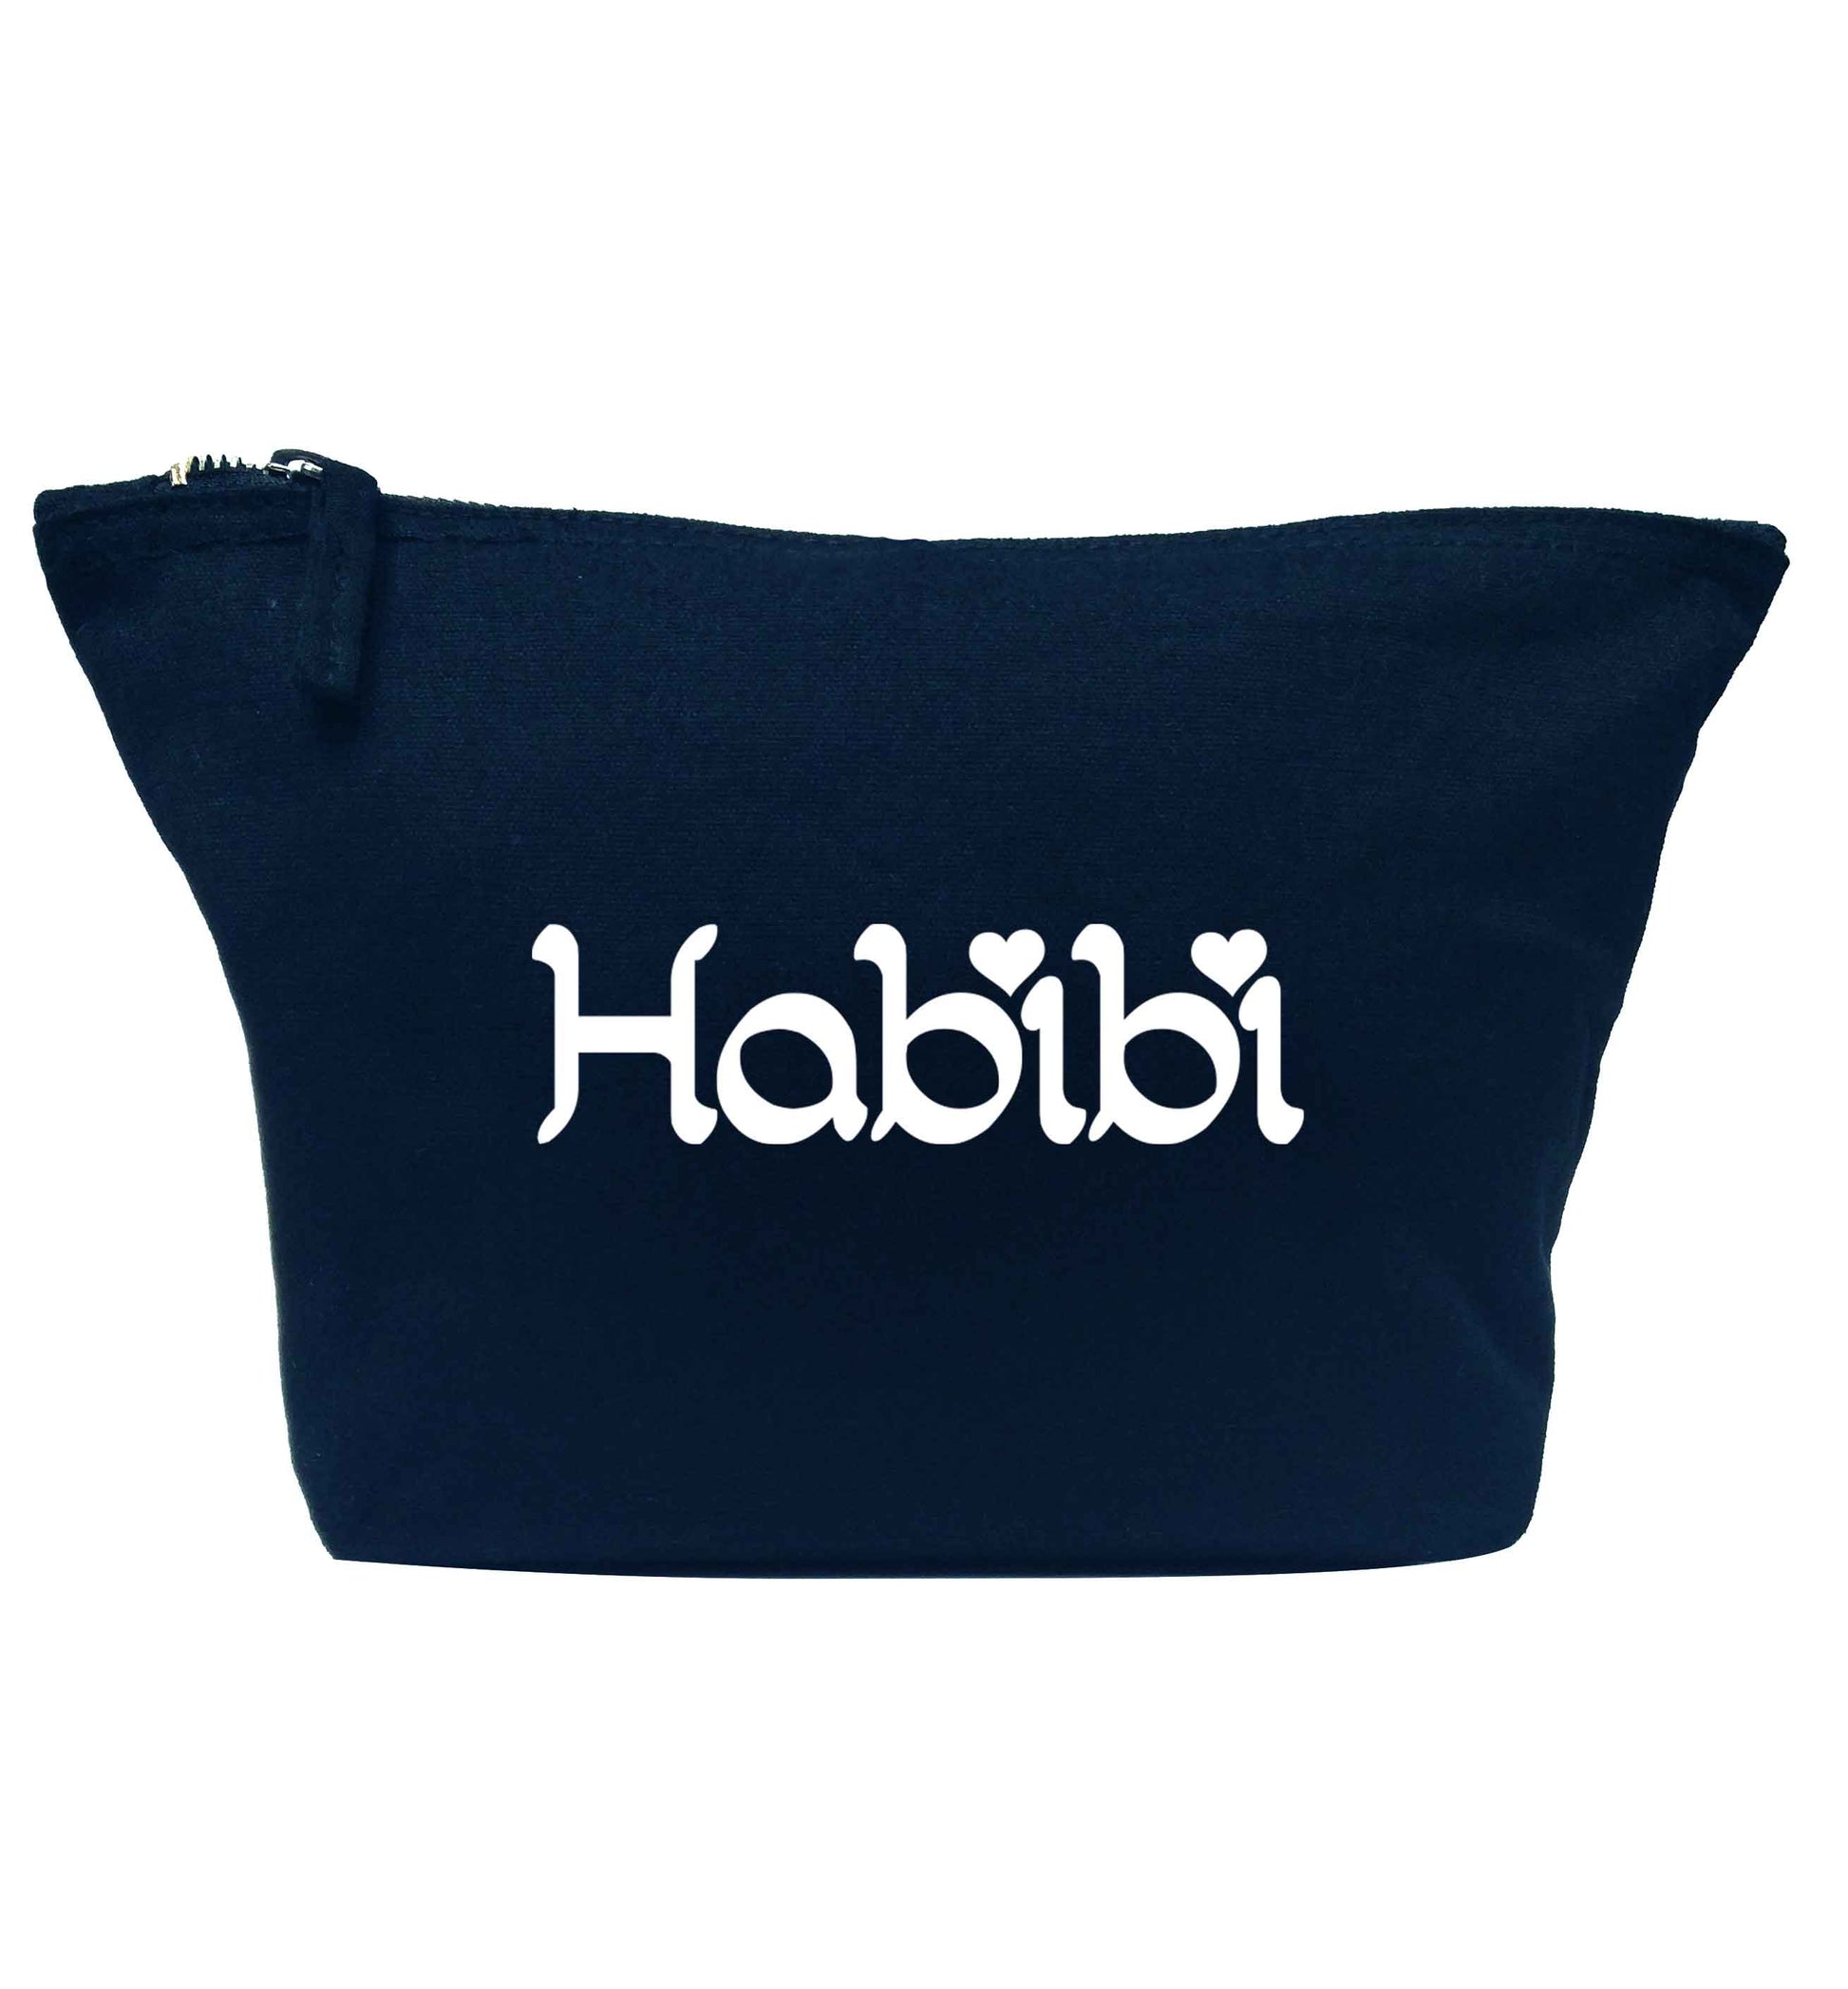 Habibi navy makeup bag